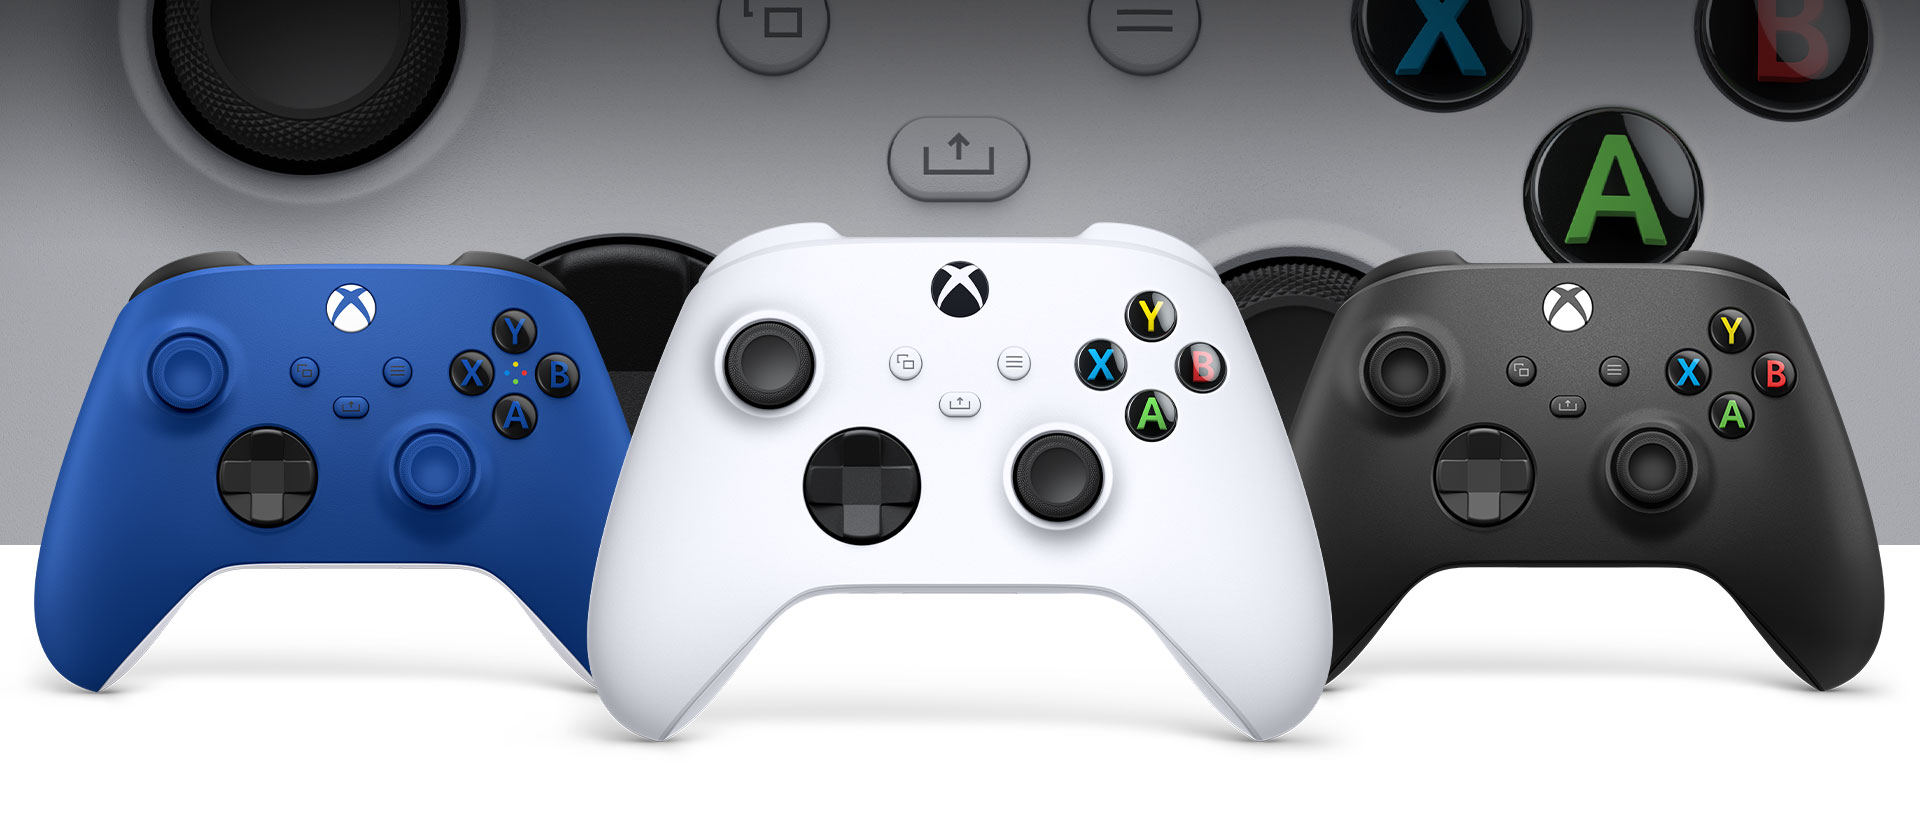 Xbox Robot controller vooraan met carbon xbox en shock blue controllers ernaast